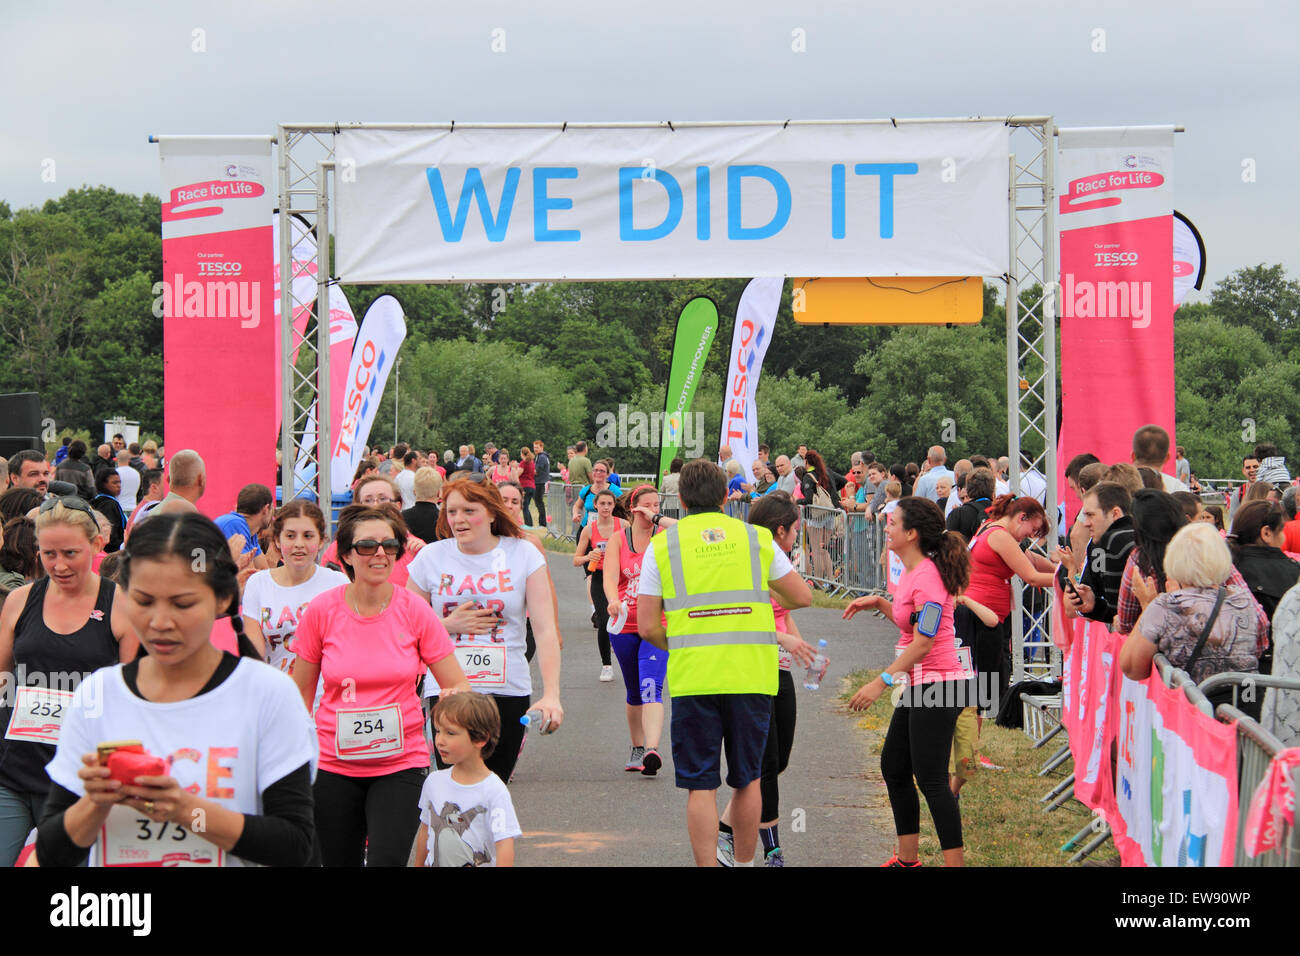 Ziellinie am "Race for LIfe" nur für Frauen Spendenaktionen Laufveranstaltung für Cancer Research UK. 20. Juni 2015. Kempton Park Rennbahn, Staines Road East, Sunbury am Thames, Middlesex, England, Großbritannien, Deutschland, UK, Europa. Bildnachweis: Ian Bottle / Alamy Live News Stockfoto